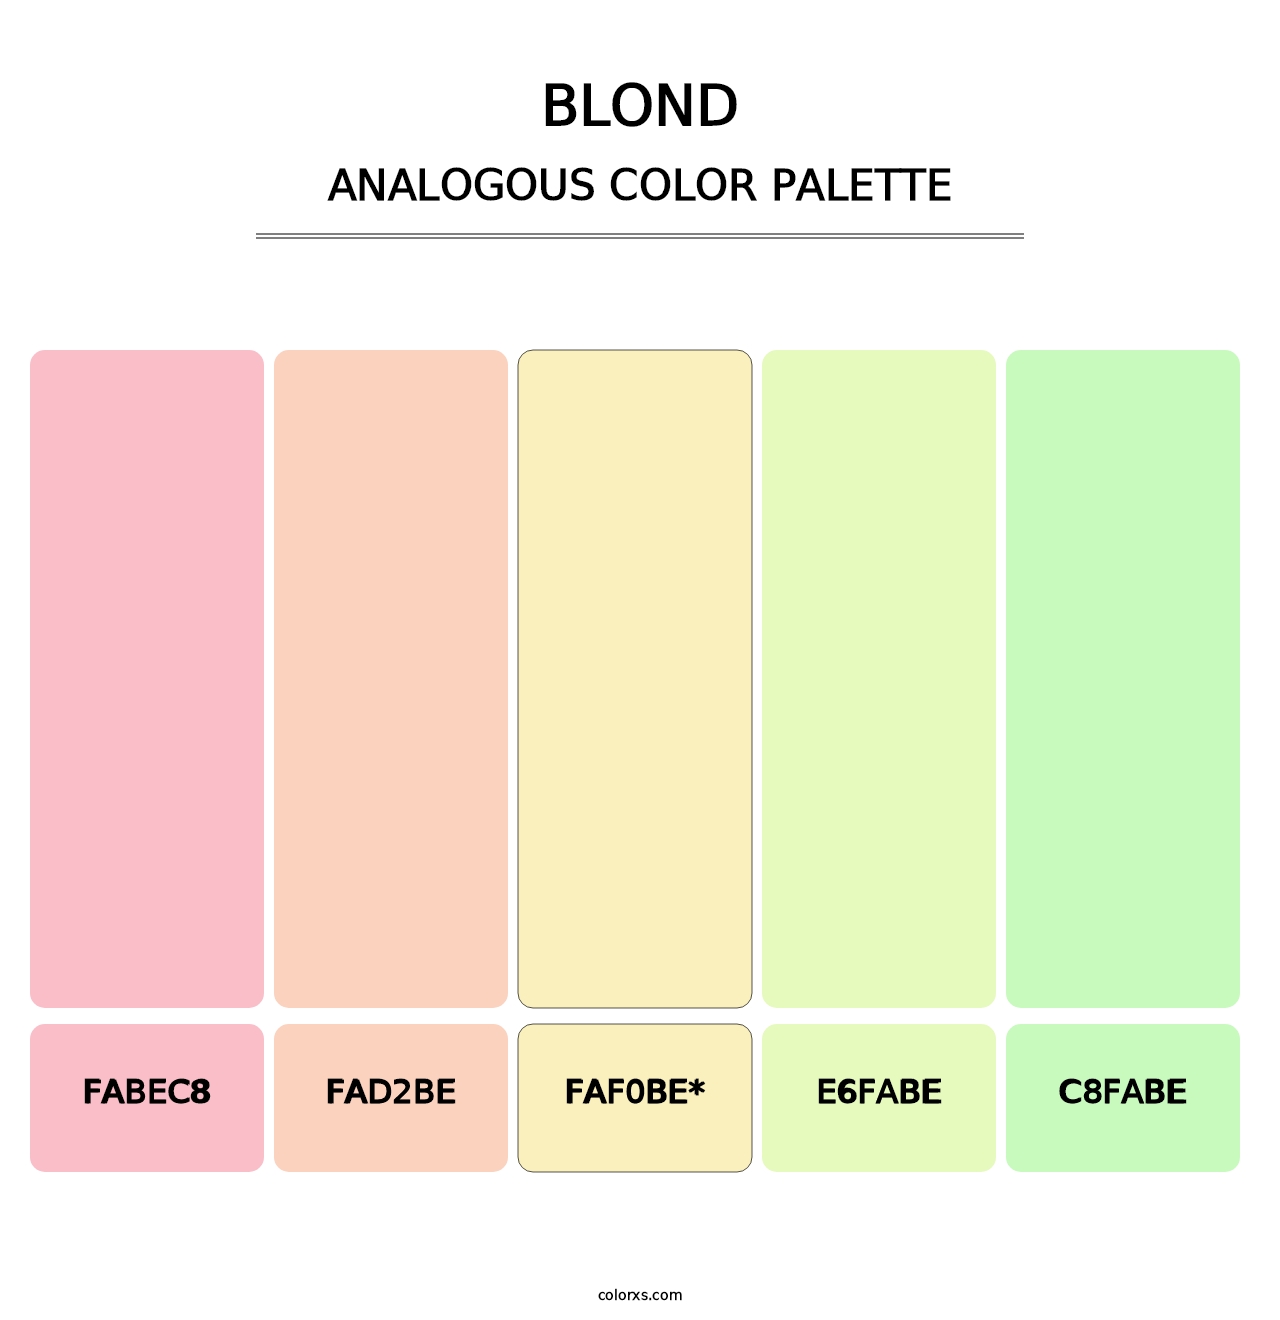 Blond - Analogous Color Palette